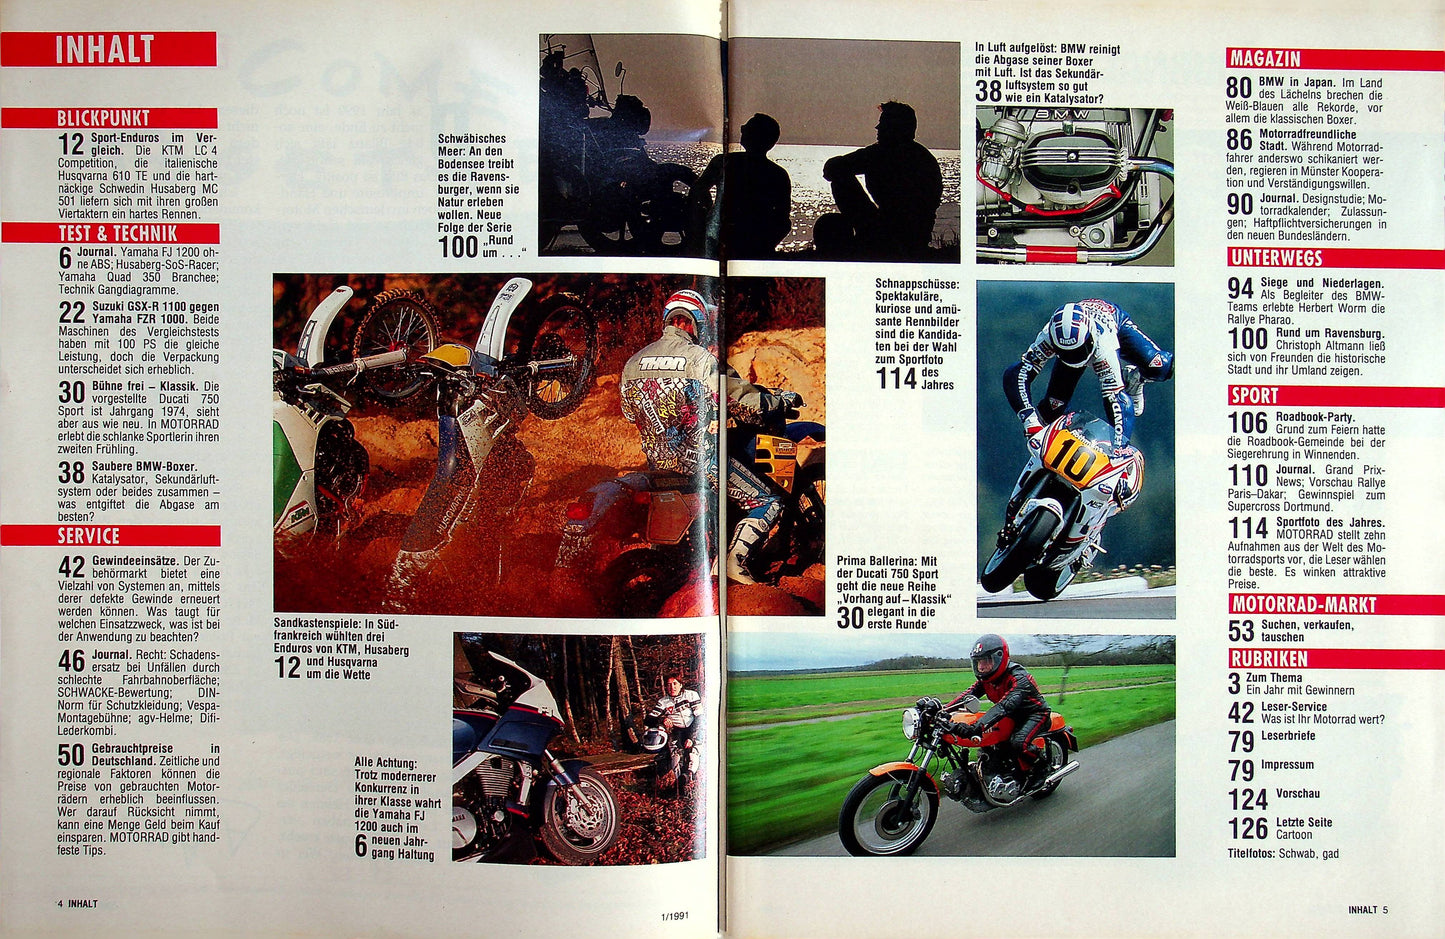 Motorrad 01/1990